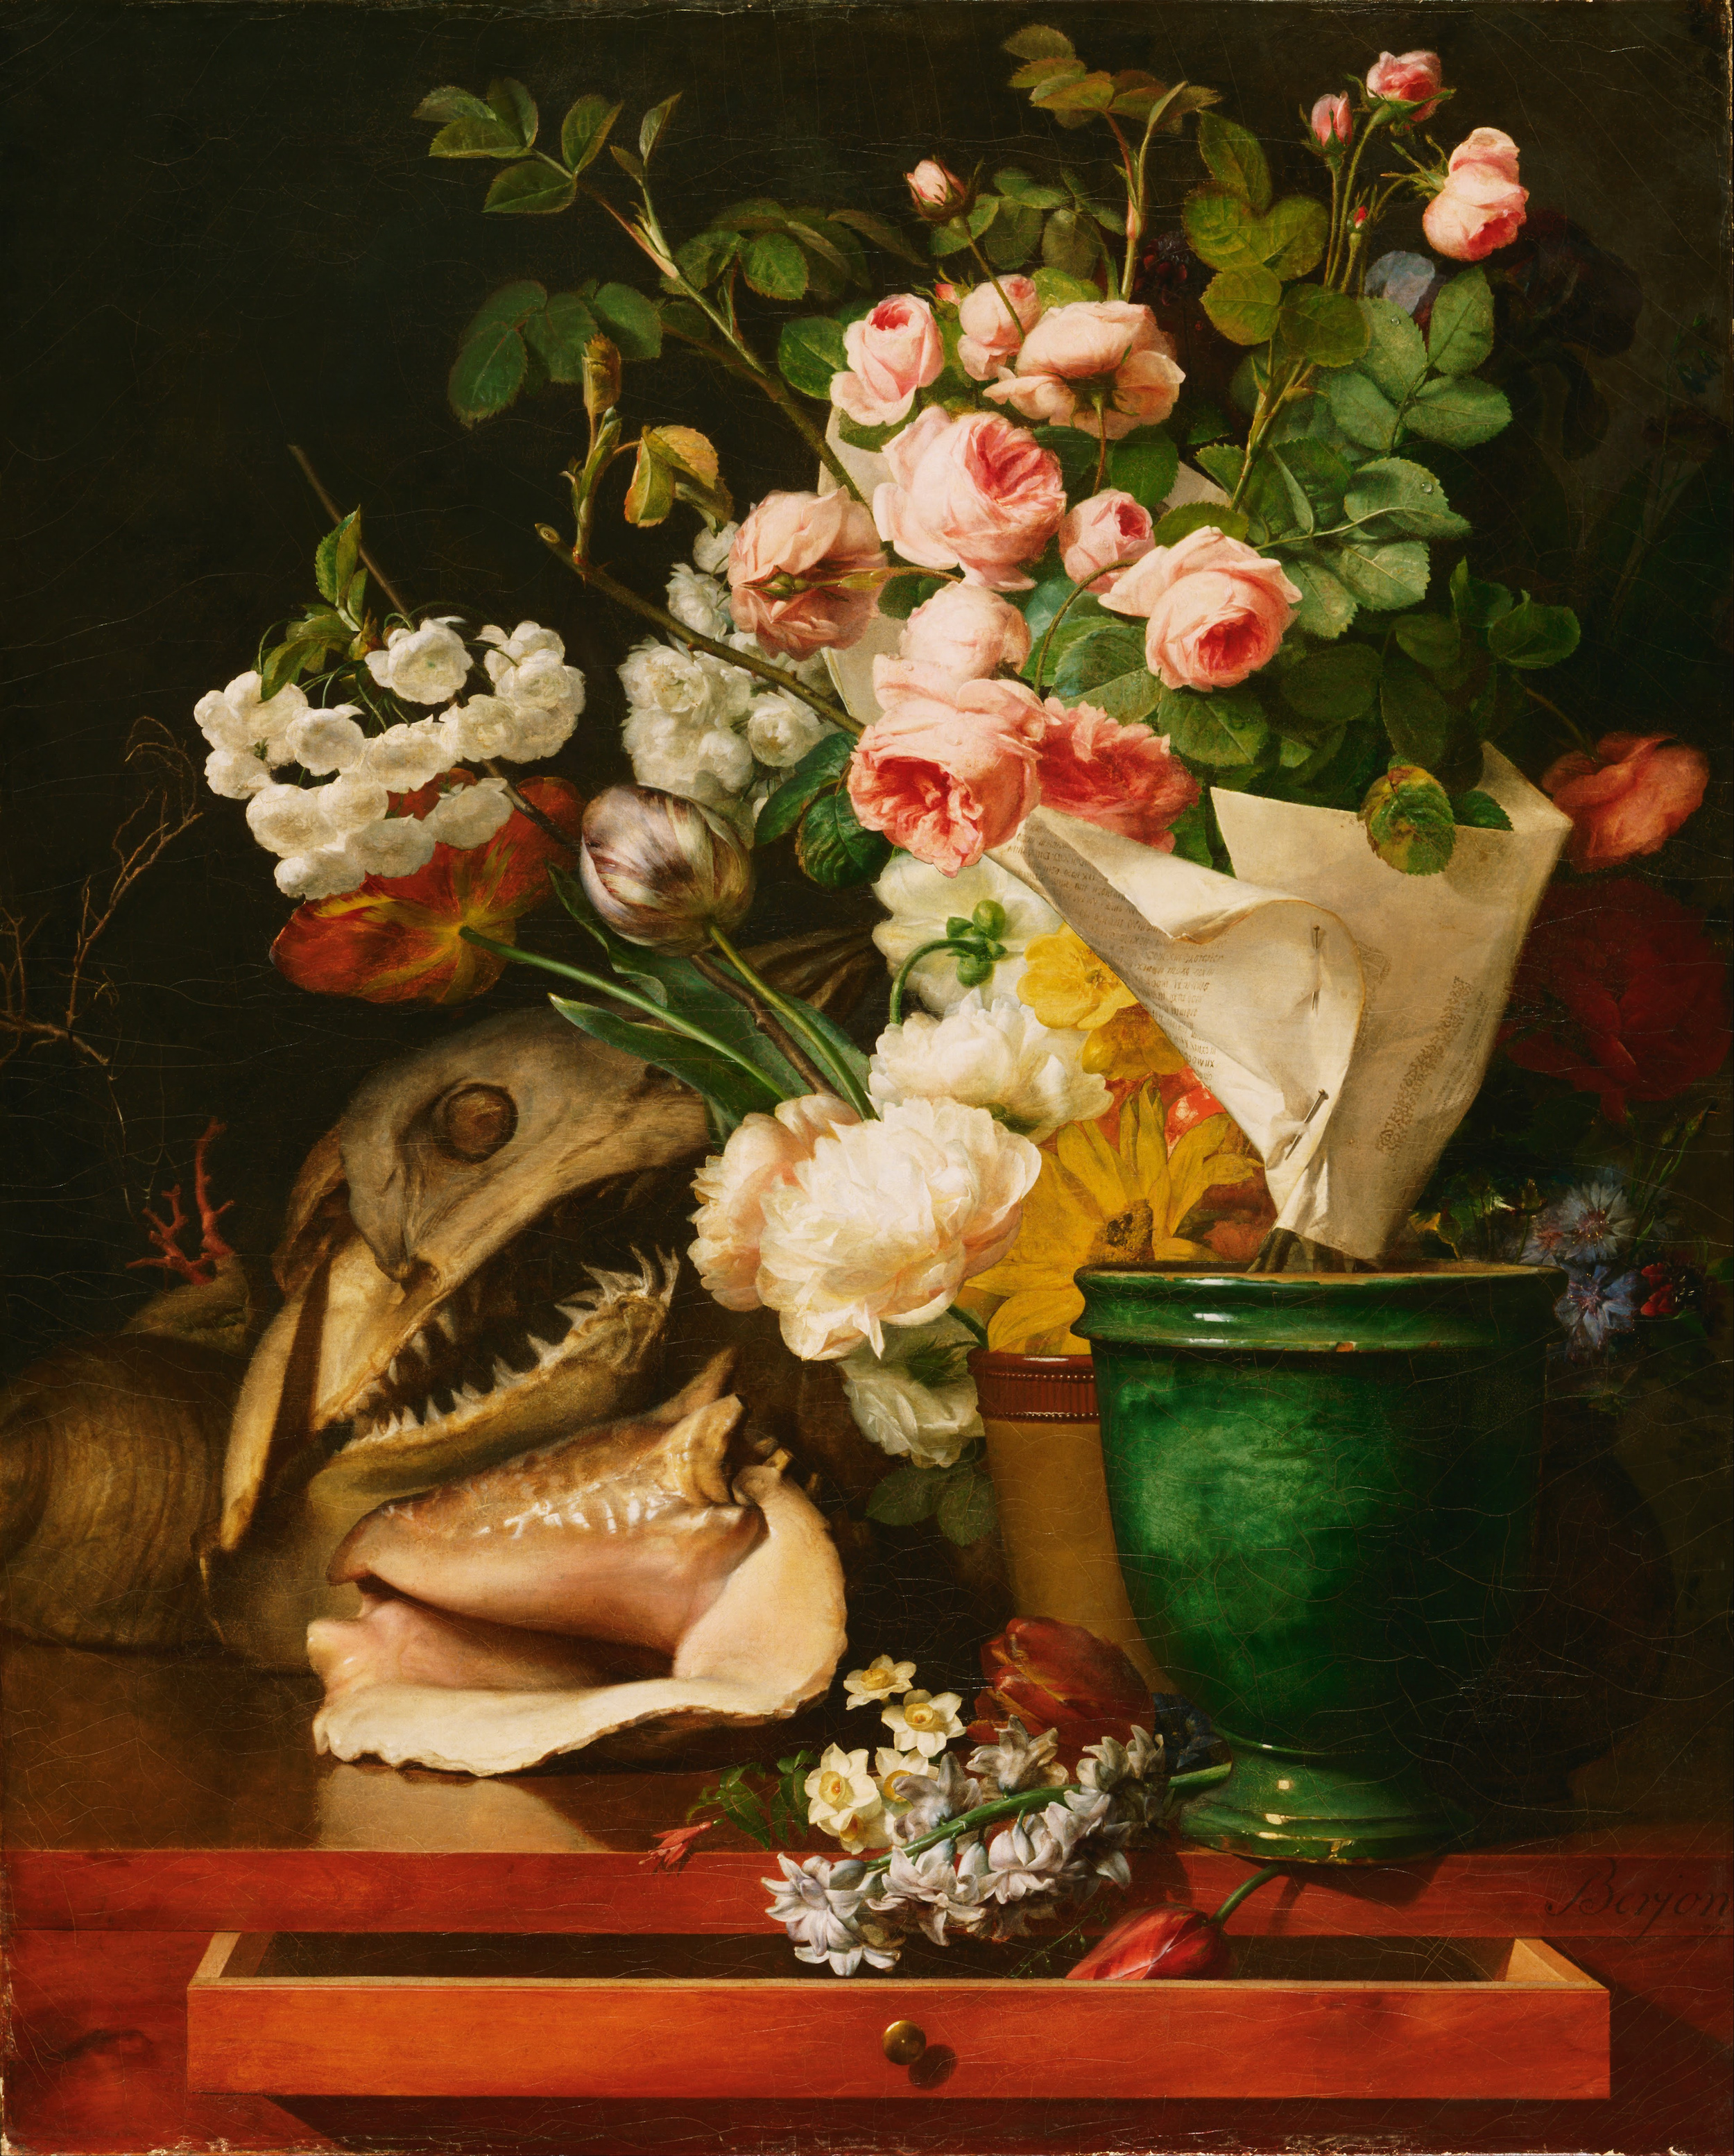 Ölüdoğa ve Çiçekler by Antoine Berjon - 1819 